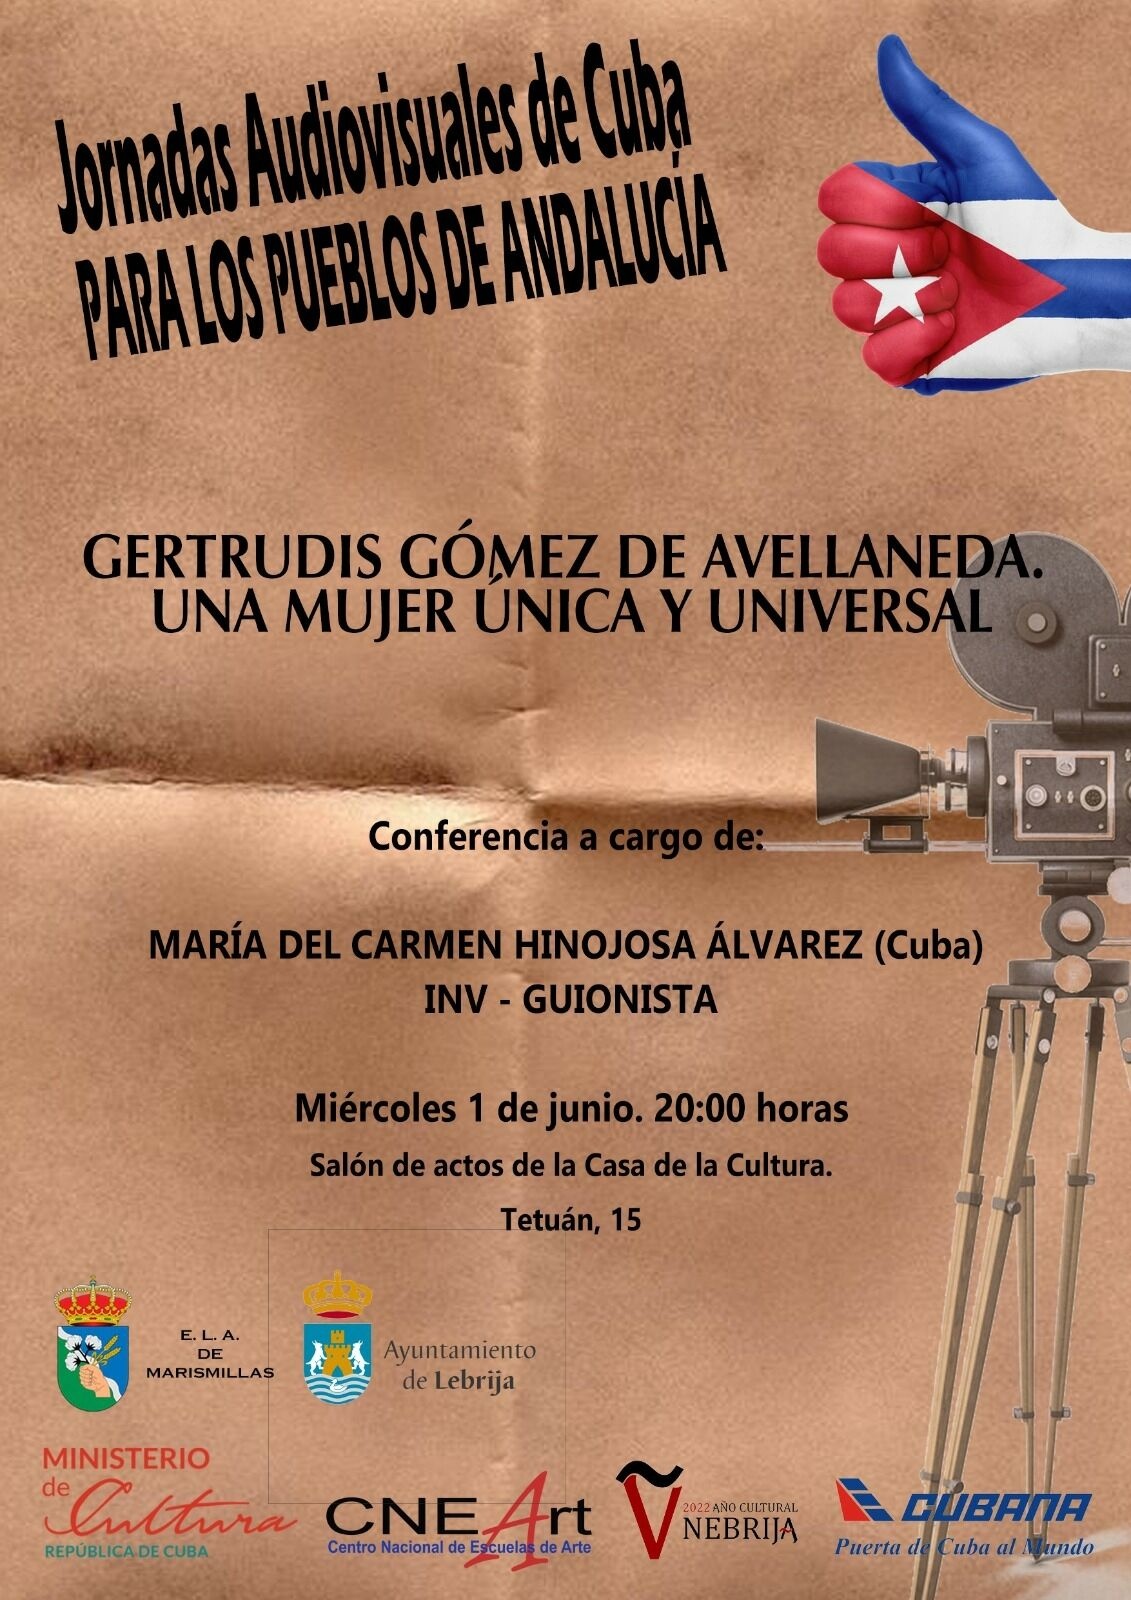 jornadas sobre Cuba para los pueblos de Andalucía